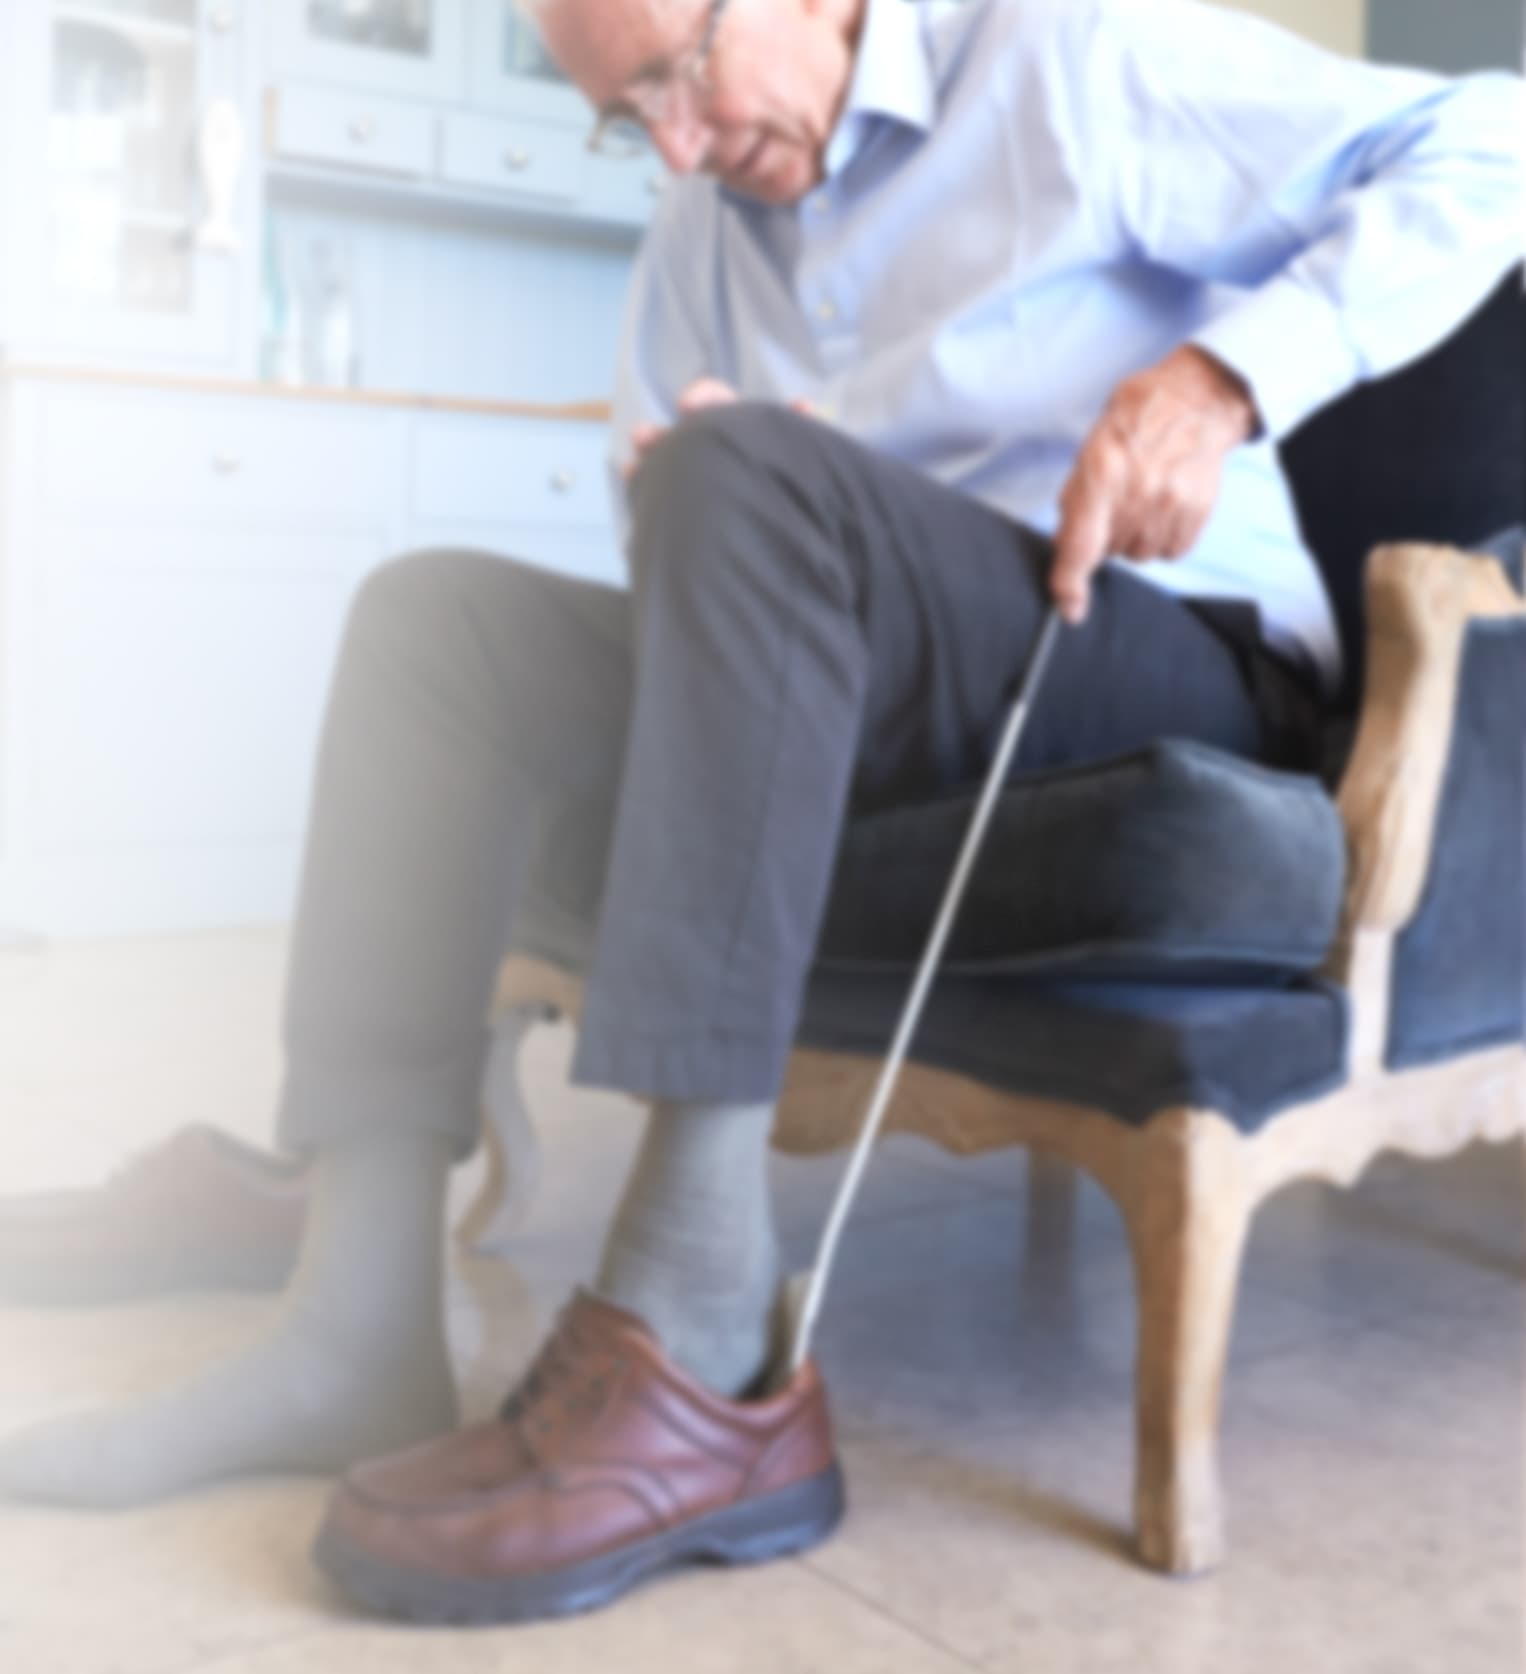 Das Bild zeigt einen sitzenden älteren Mann, der sich mit einem Schuhlöffel einen braunen Herrenschuh anzieht, der von Frank Kußmann in Mainz mit einer diabetes-adaptierten Fußbettung versorgt wurde.